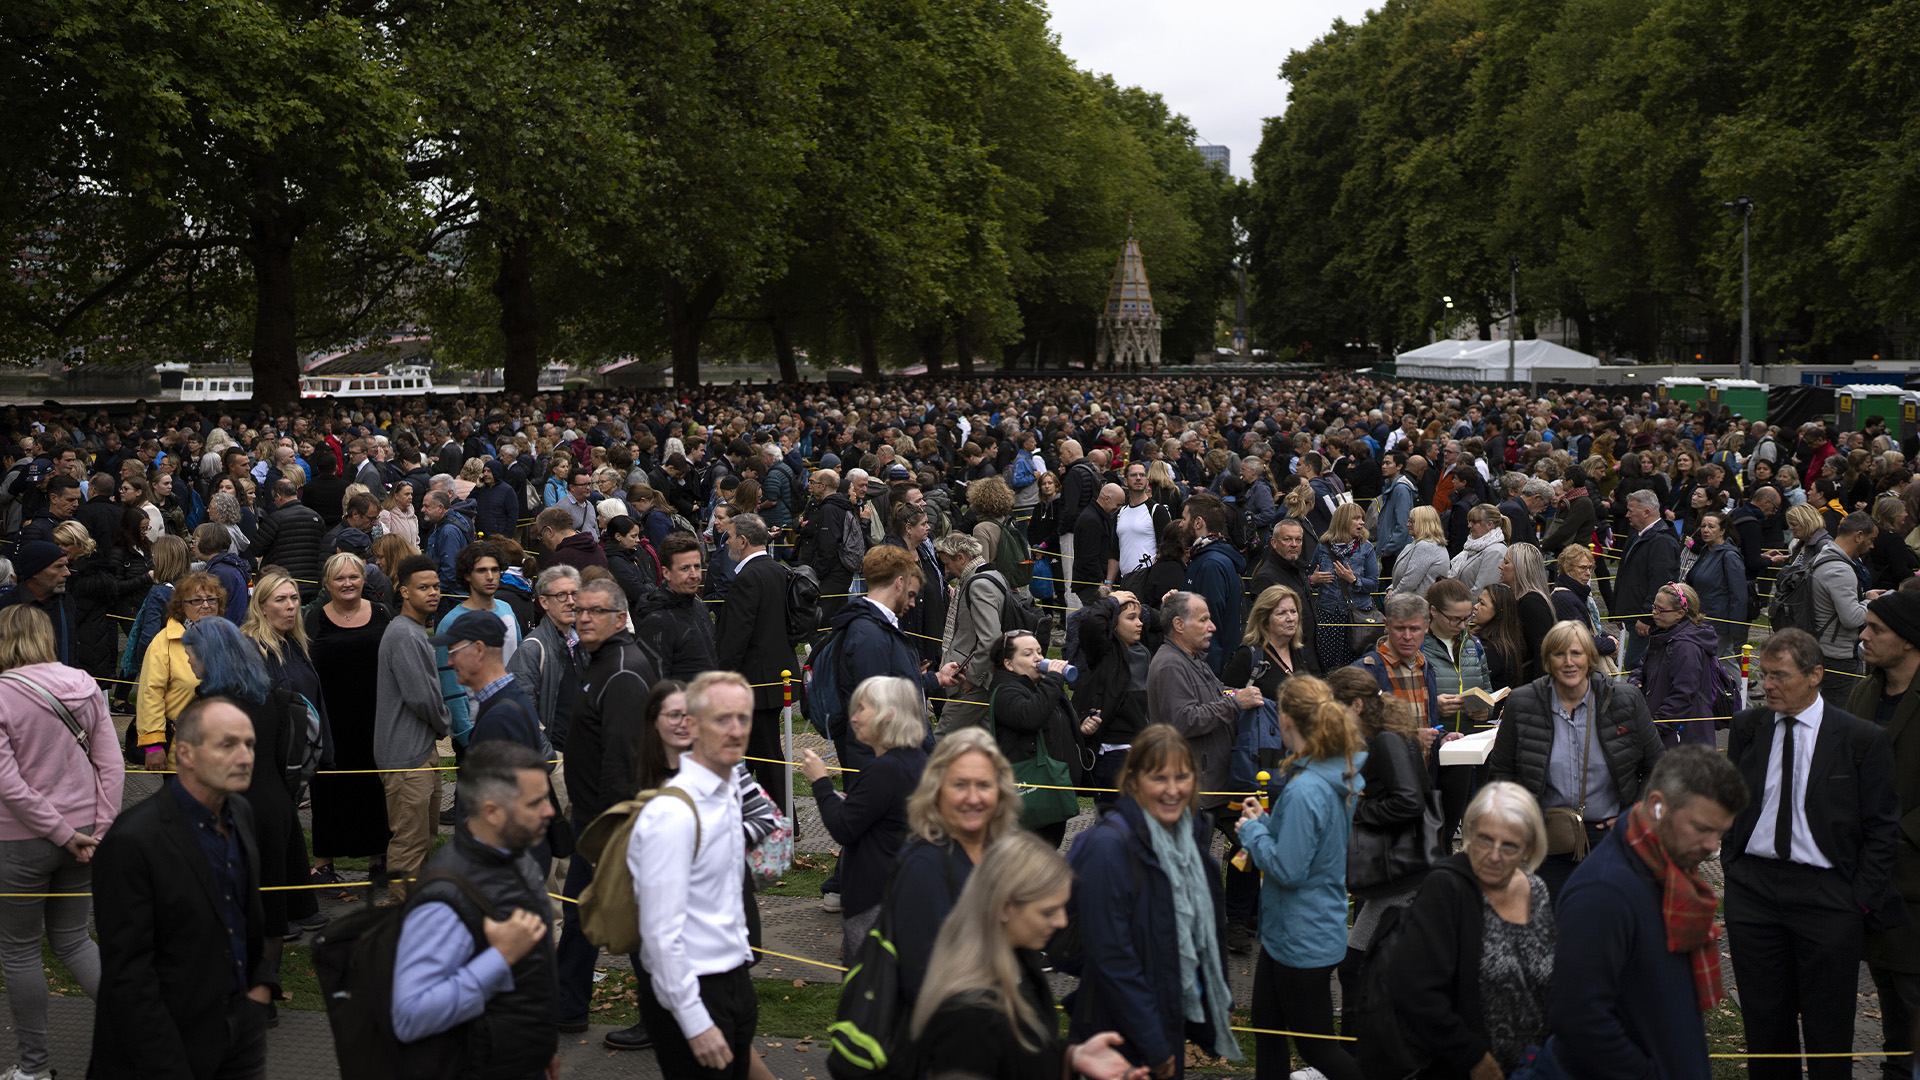 Les gens font la queue pour rendre hommage à feu la reine Elizabeth II lors de l'état allongé, devant Westminster Hall à Londres, le jeudi 15 septembre 2022. La reine restera en état à Westminster Hall pendant quatre jours complets avant ses funérailles le Lundi 19 septembre.